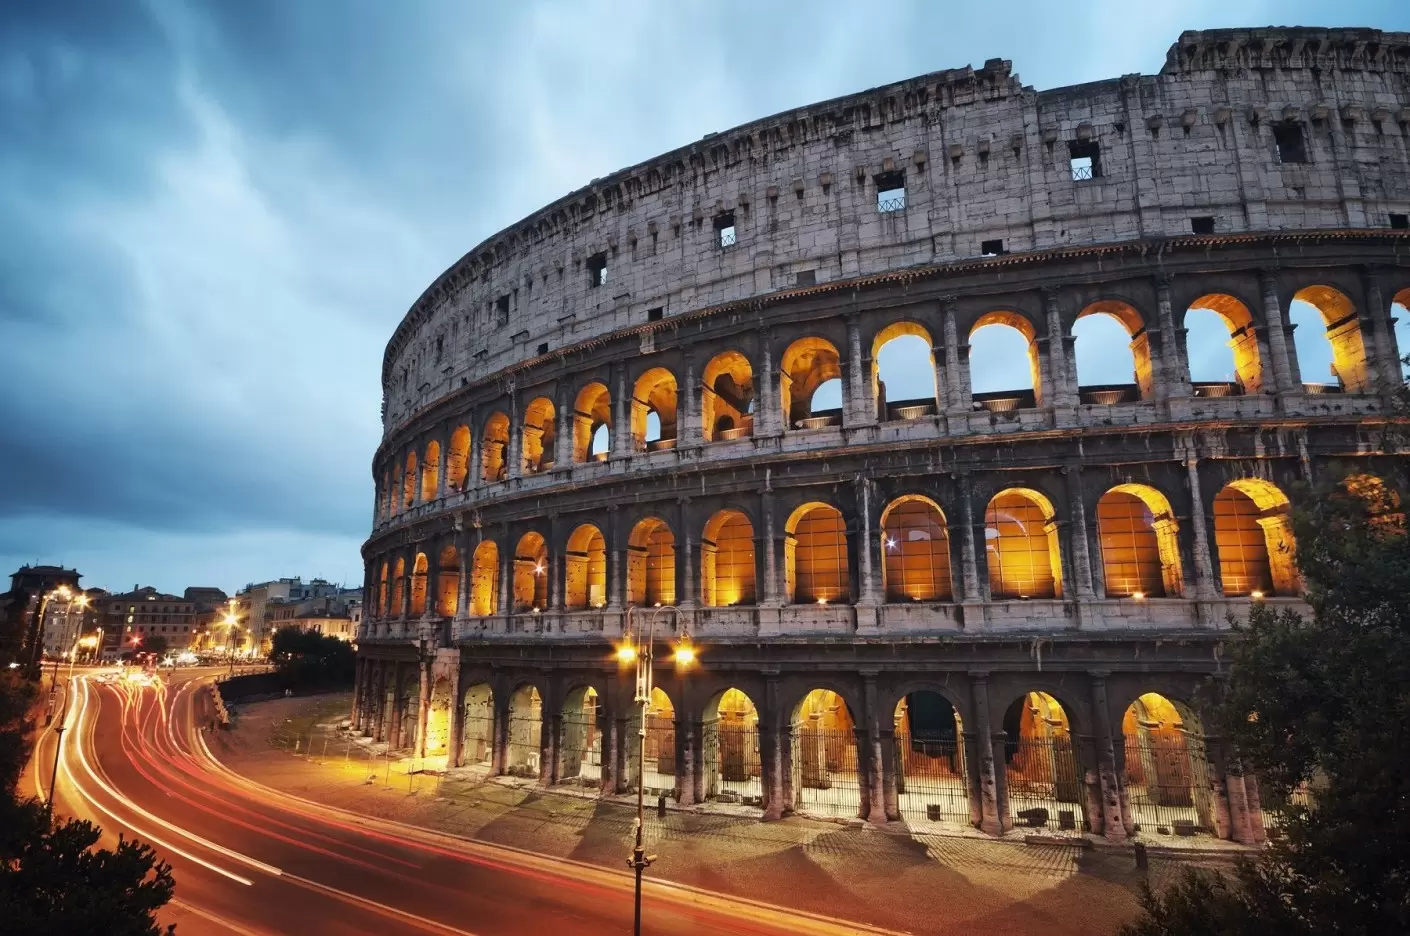 Ką verta žinoti prieš vykstant į Romą?